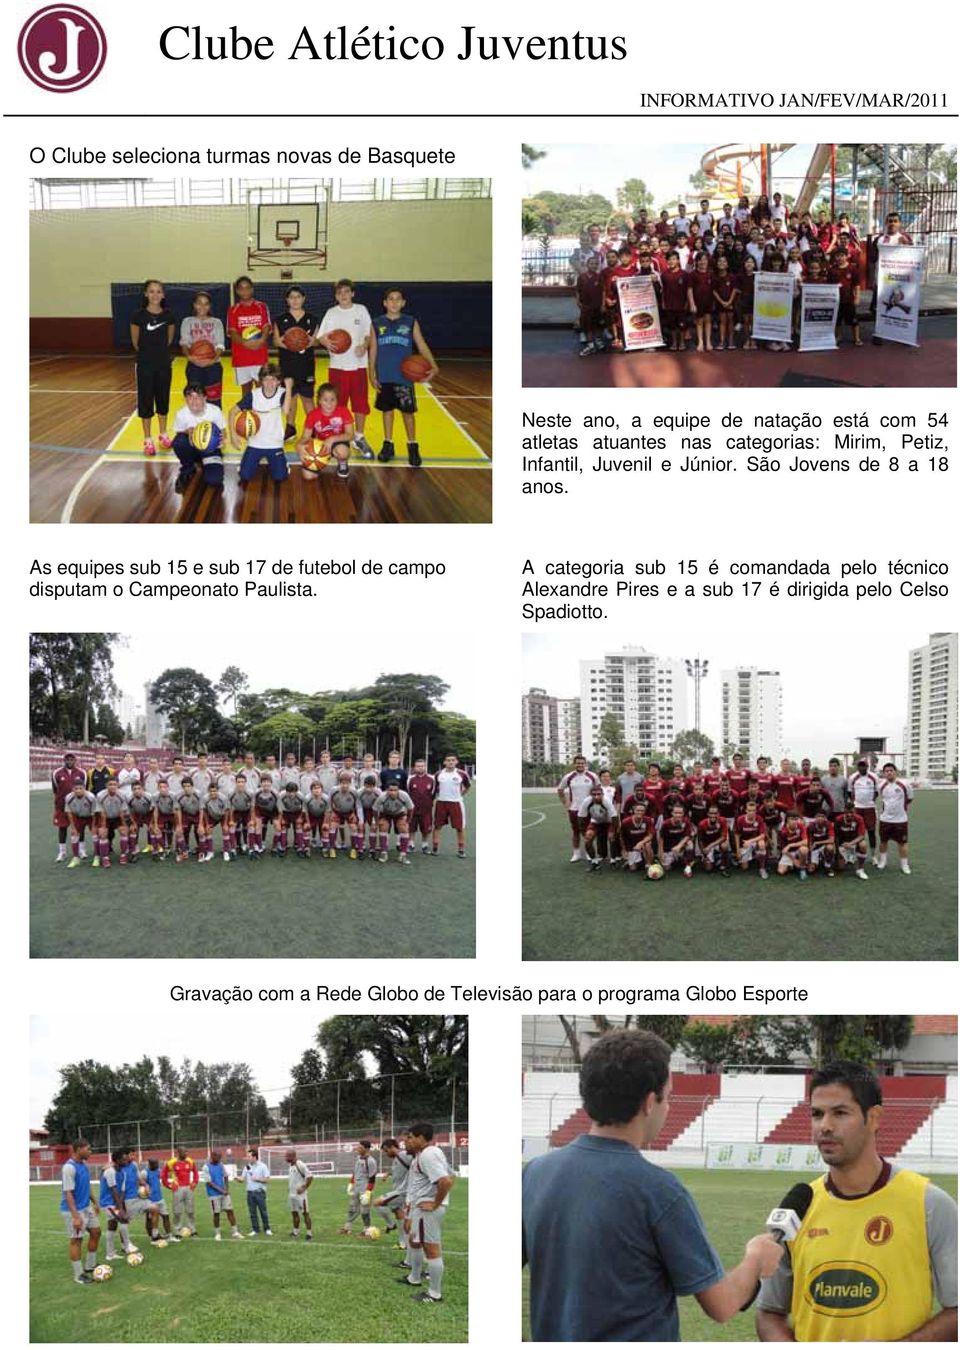 As equipes sub 15 e sub 17 de futebol de campo disputam o Campeonato Paulista.